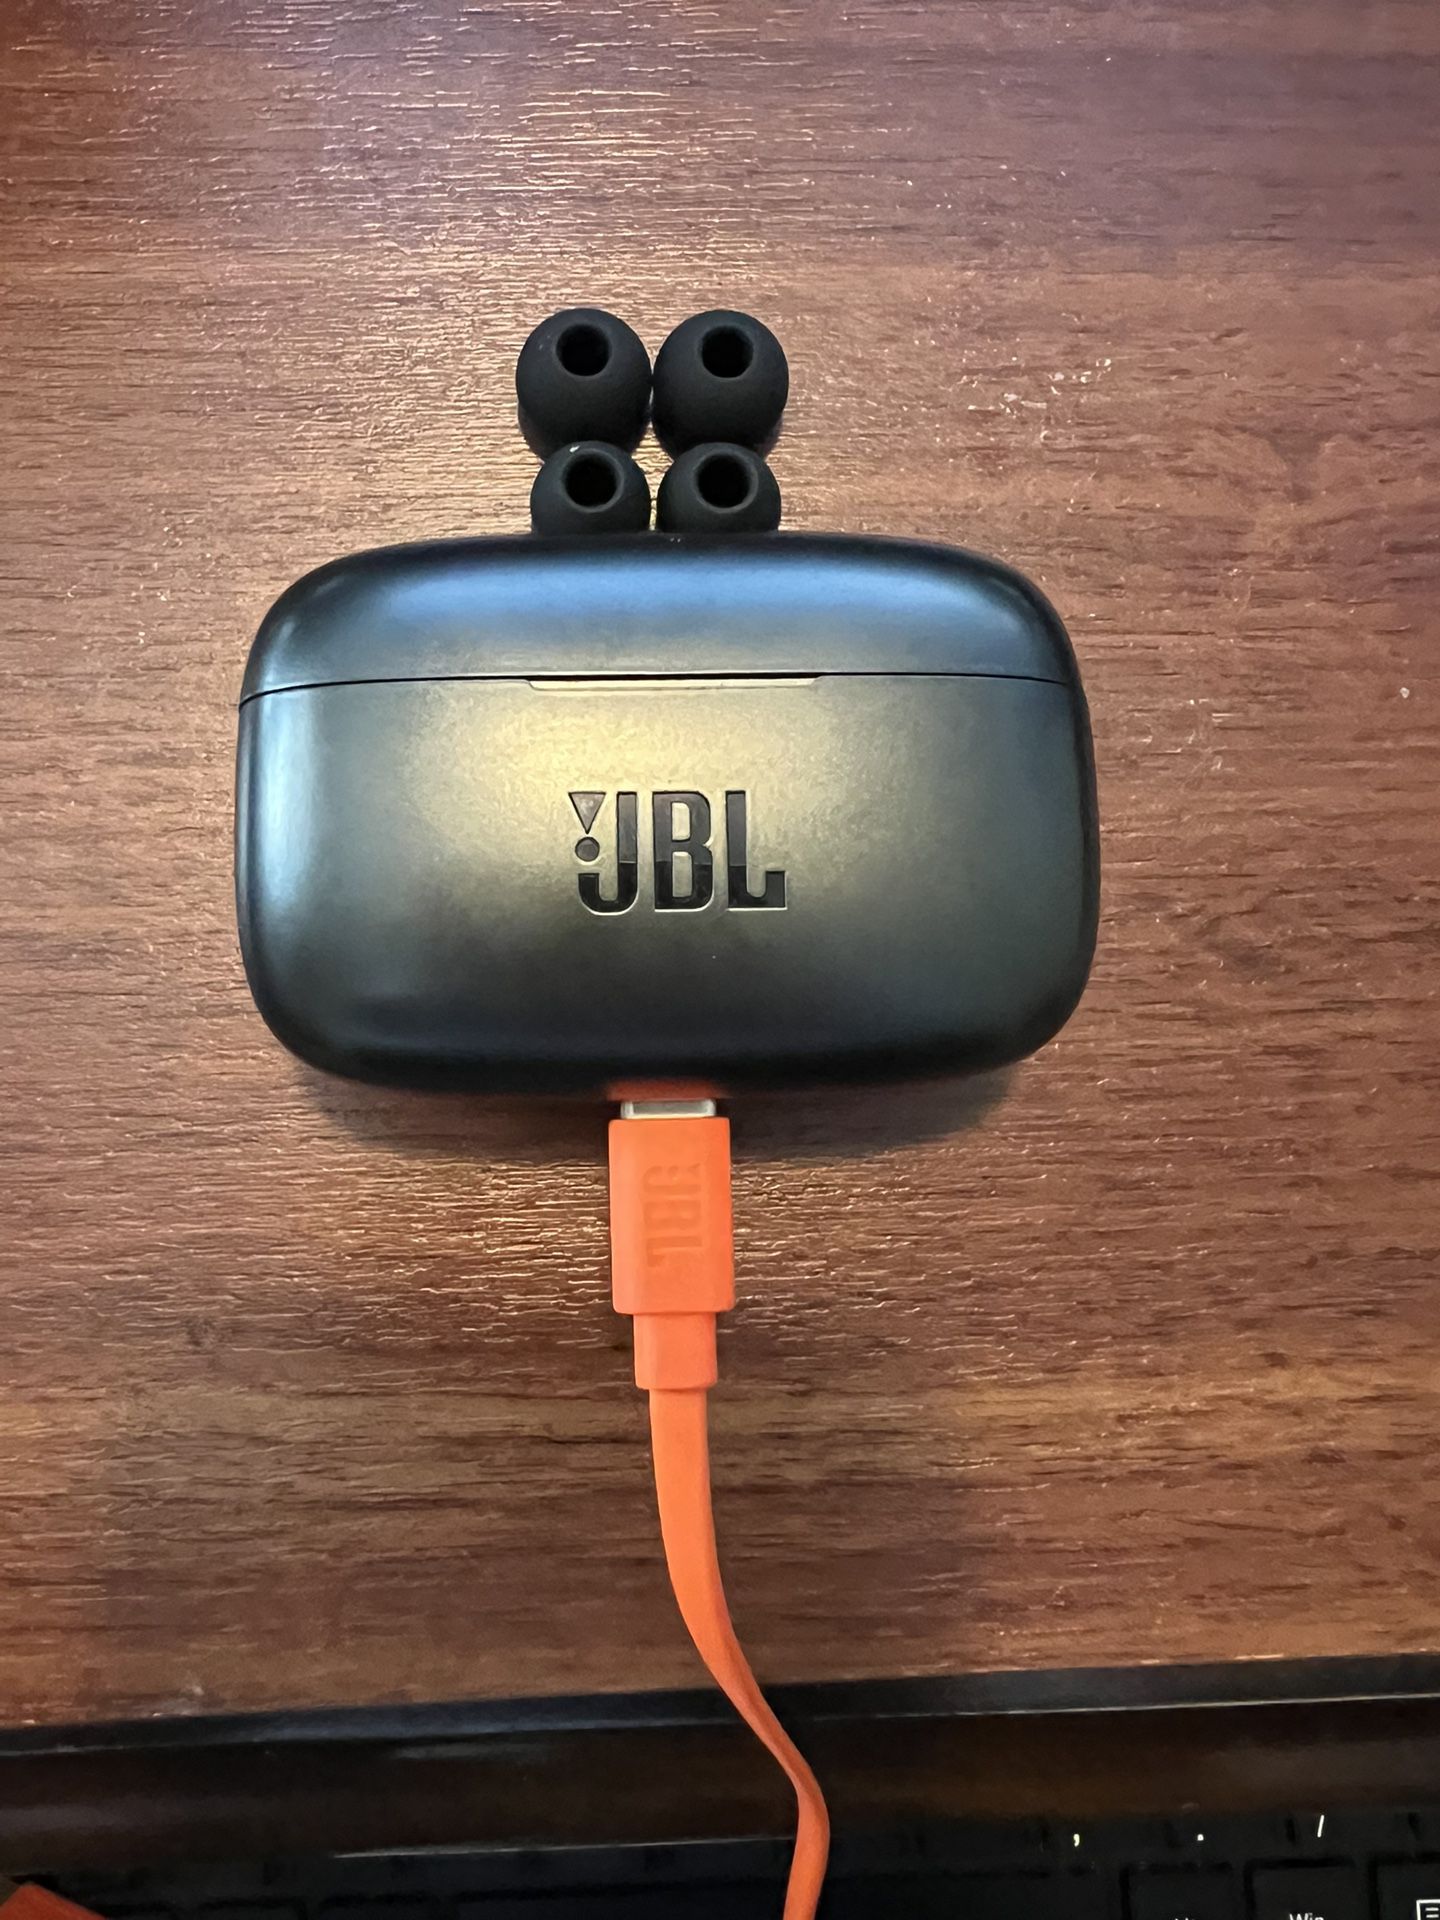 JBL Wireless Earbuds